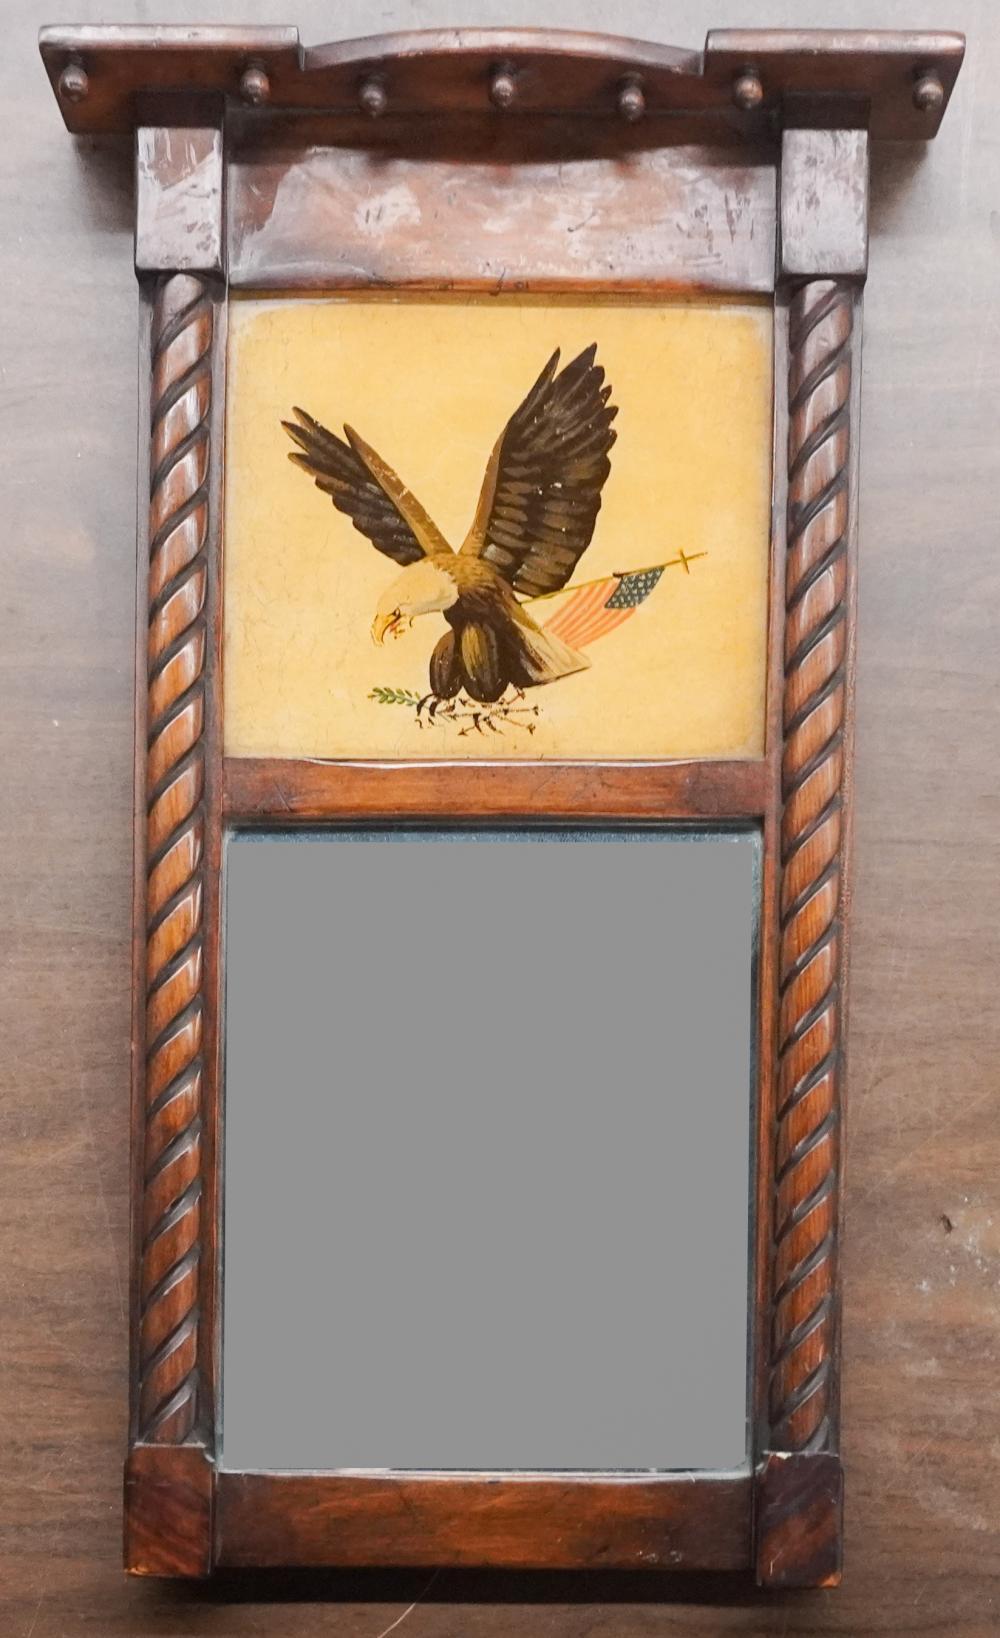 Miroir Trumeau en acajou de style Feder du début du 20e siècle, peint à la main.  sur panneau aigle perché sur fond jaune. Mesure 21,5